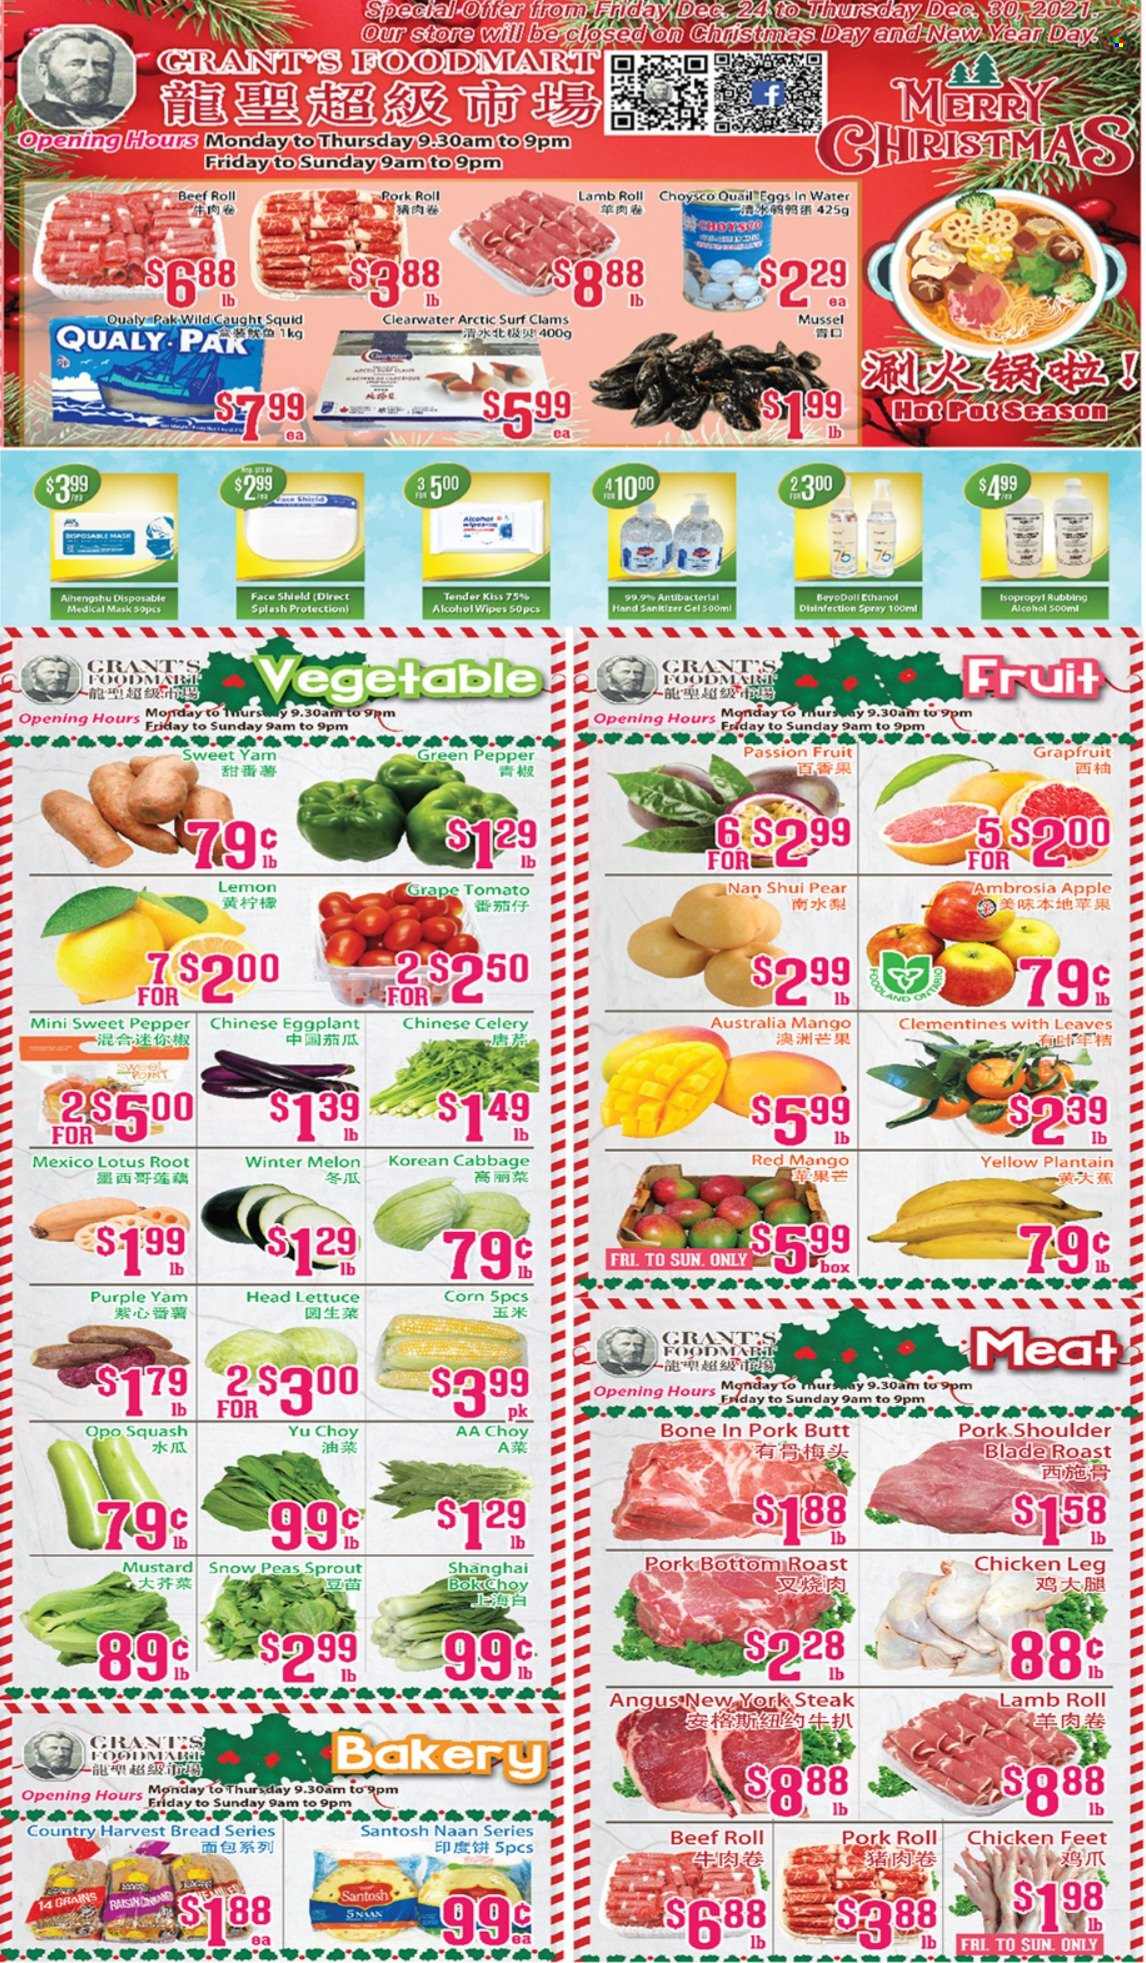 thumbnail - Circulaire Grant's Foodmart - 24 Décembre 2021 - 30 Décembre 2021 - Produits soldés - clémentines, melon, steak, Lotus. Page 1.